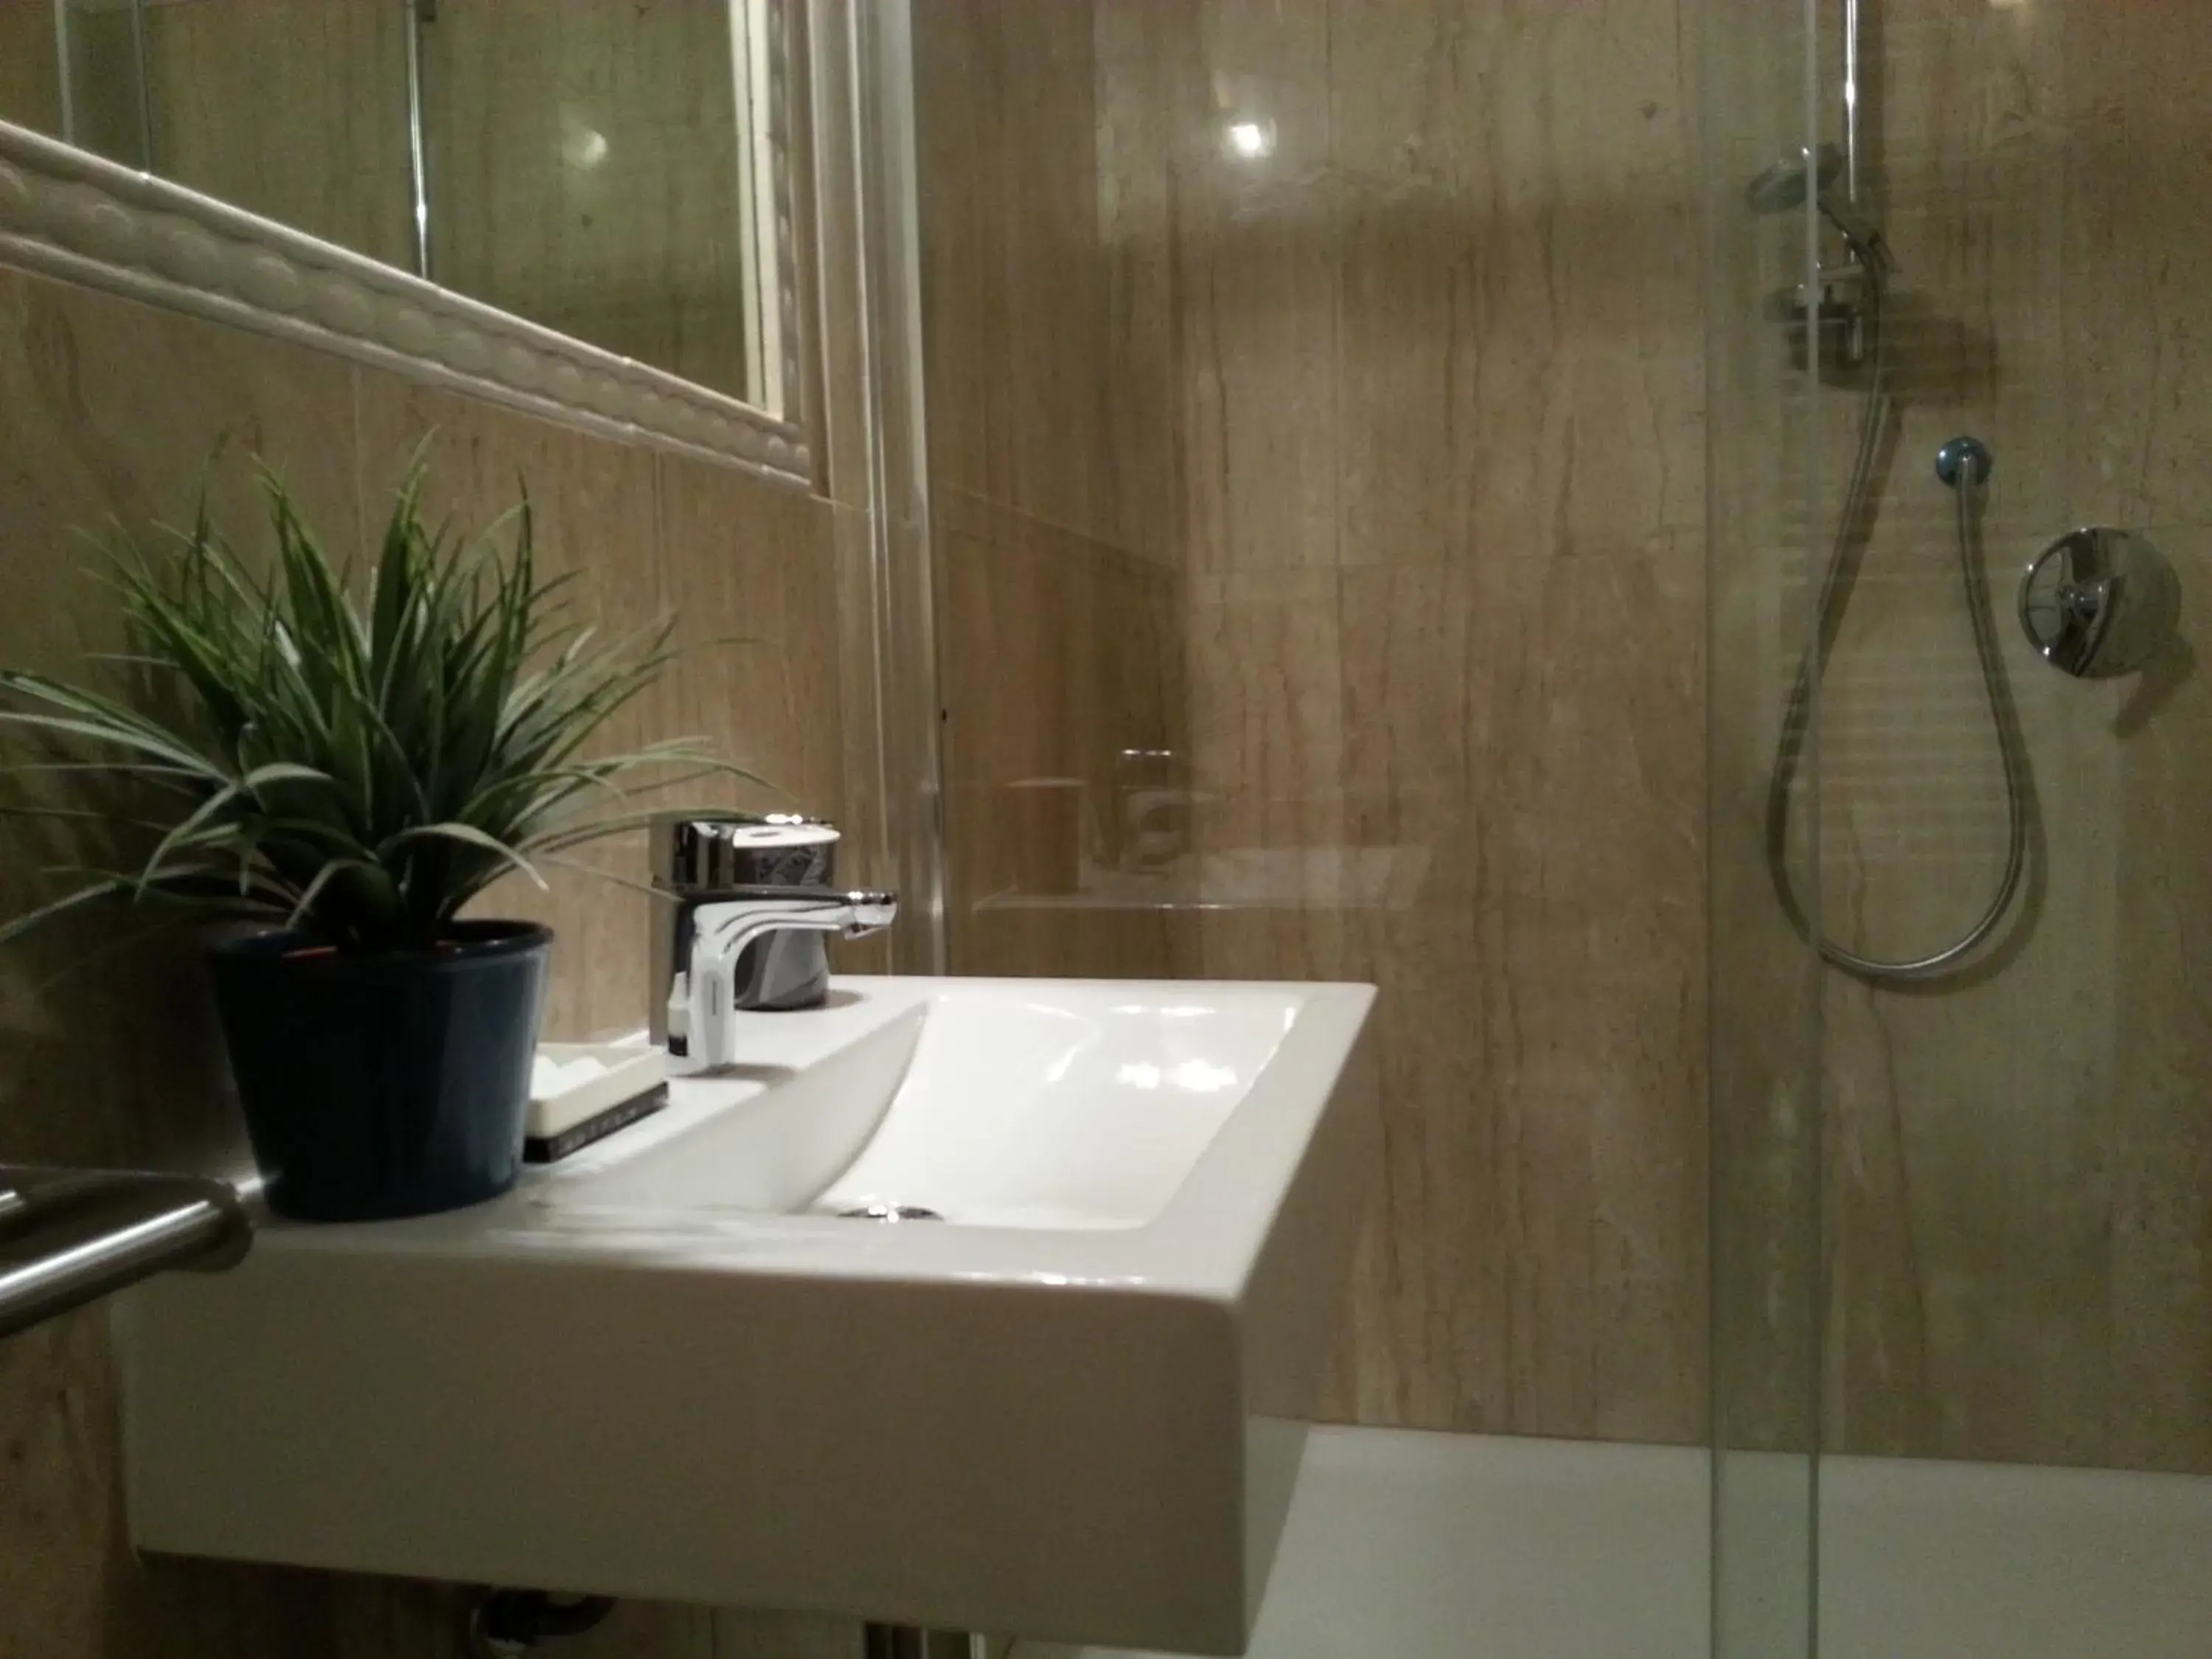 Bathroom in Hotel La Vecchia Reggio